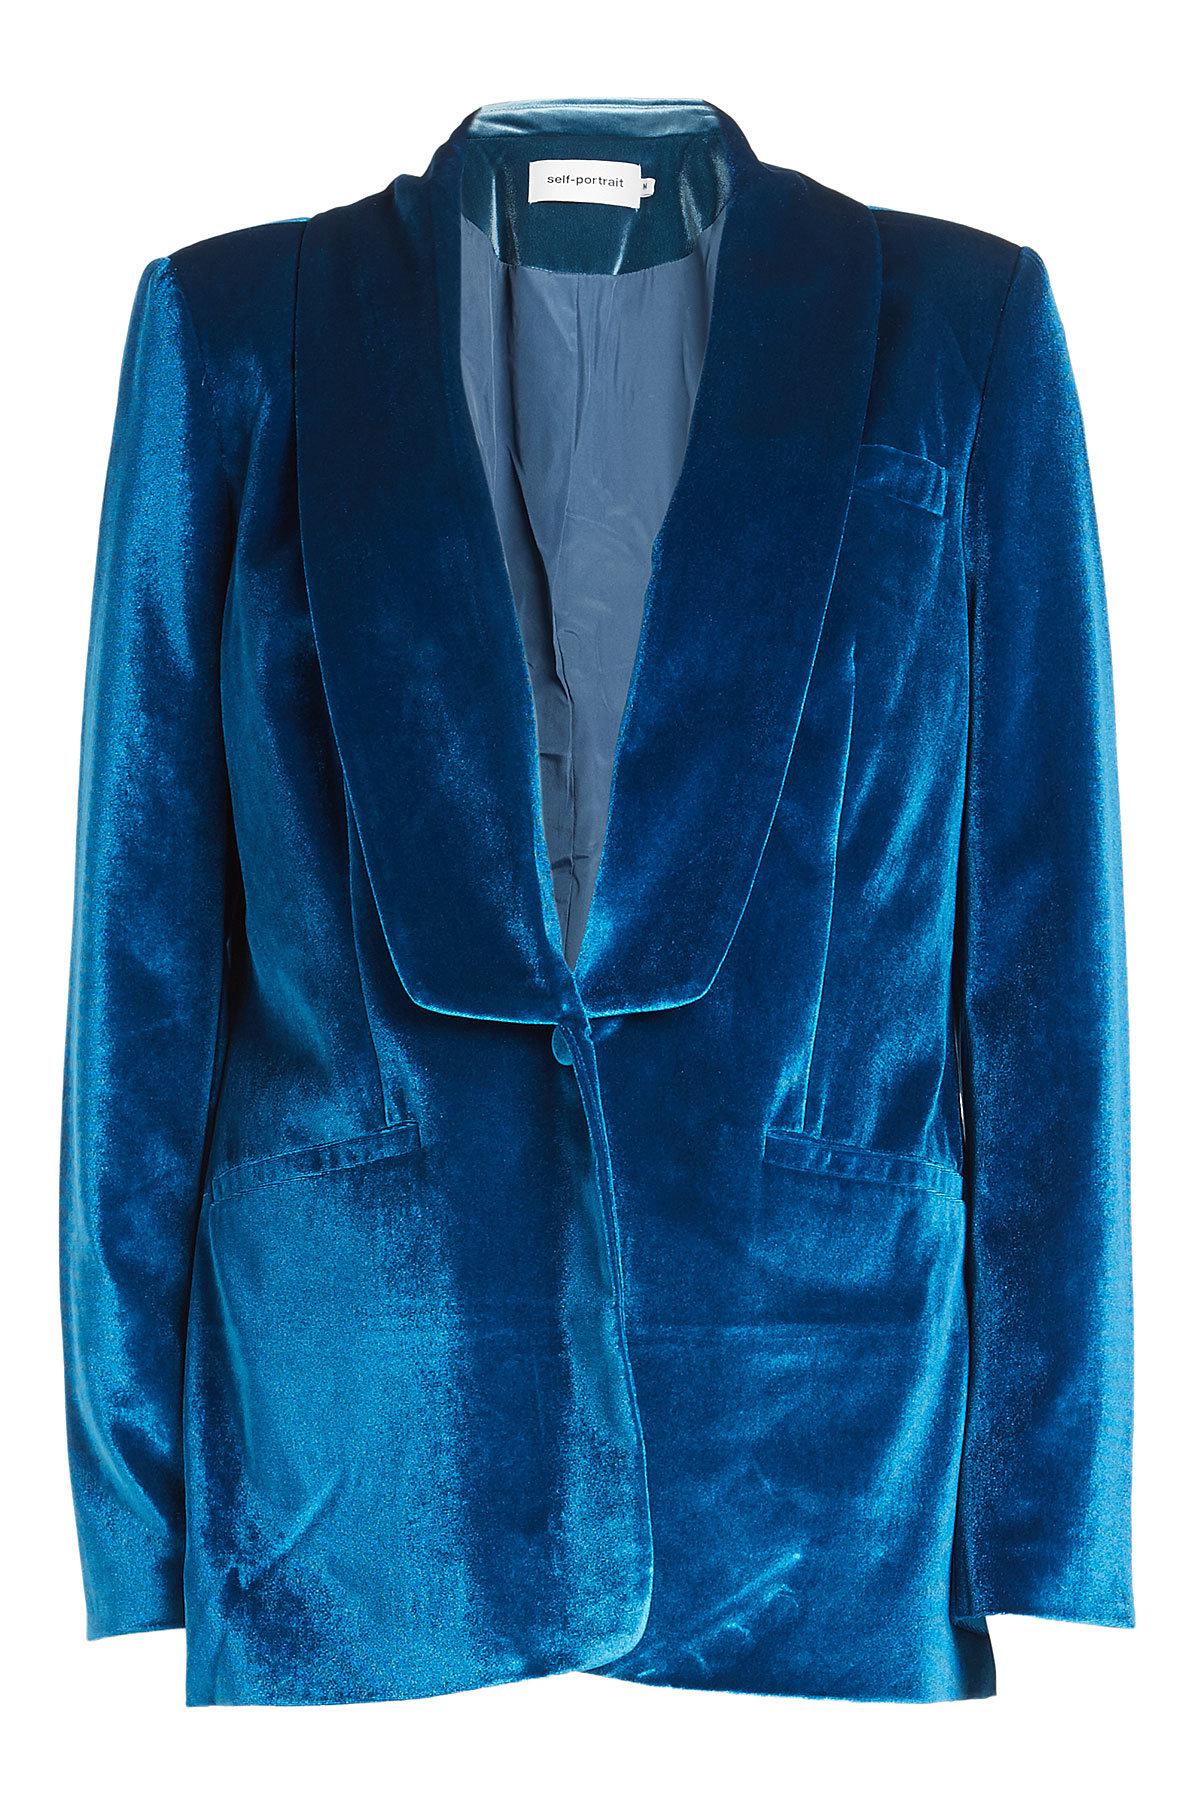 Lyst - Self-Portrait Velvet Blazer in Blue for Men